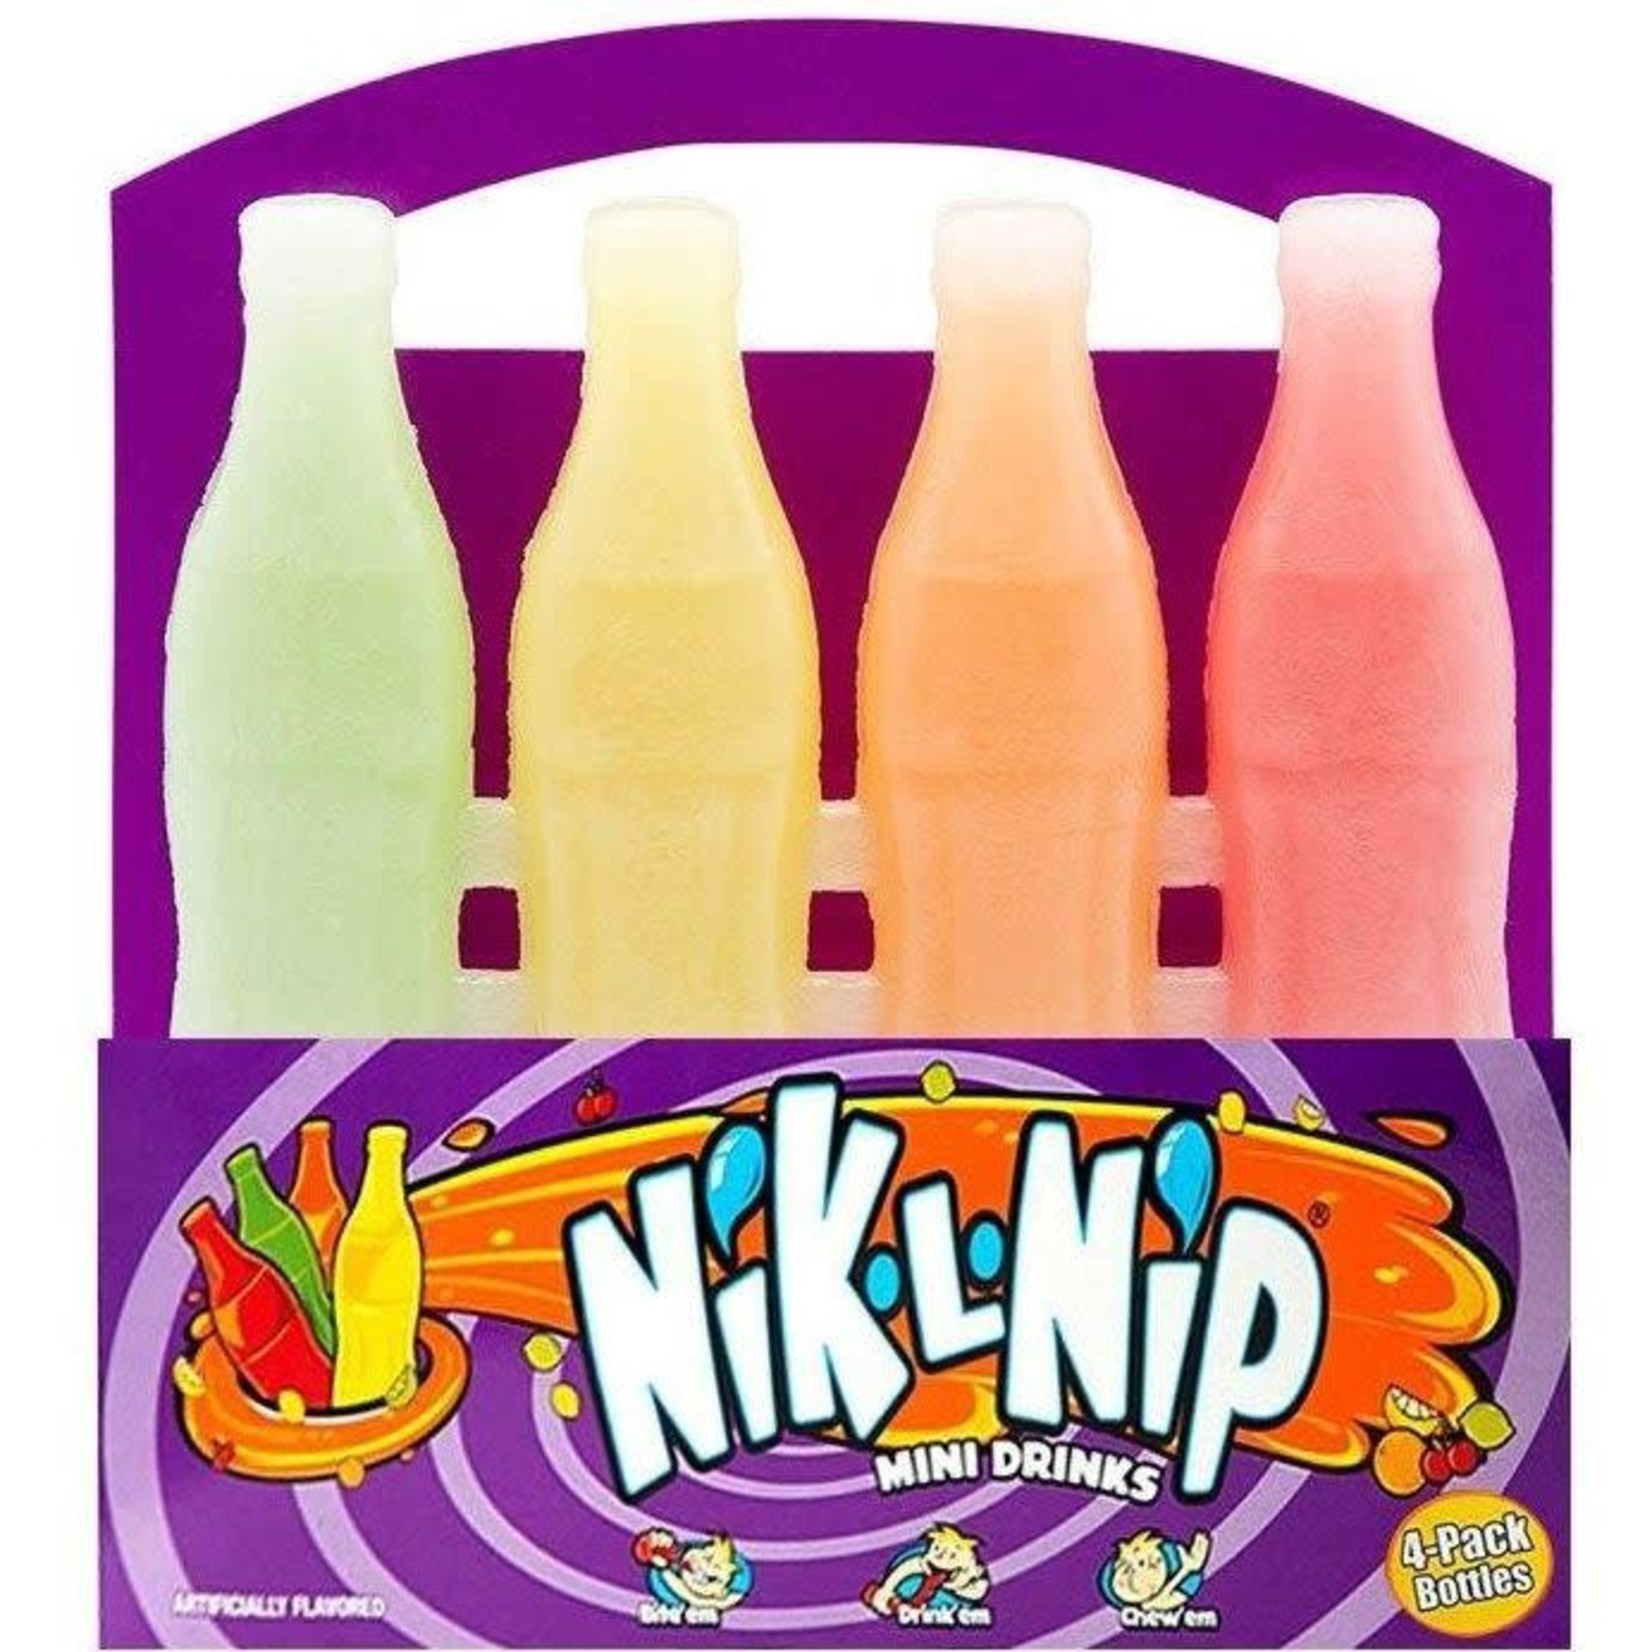 Nik L Nip wax pop bottles